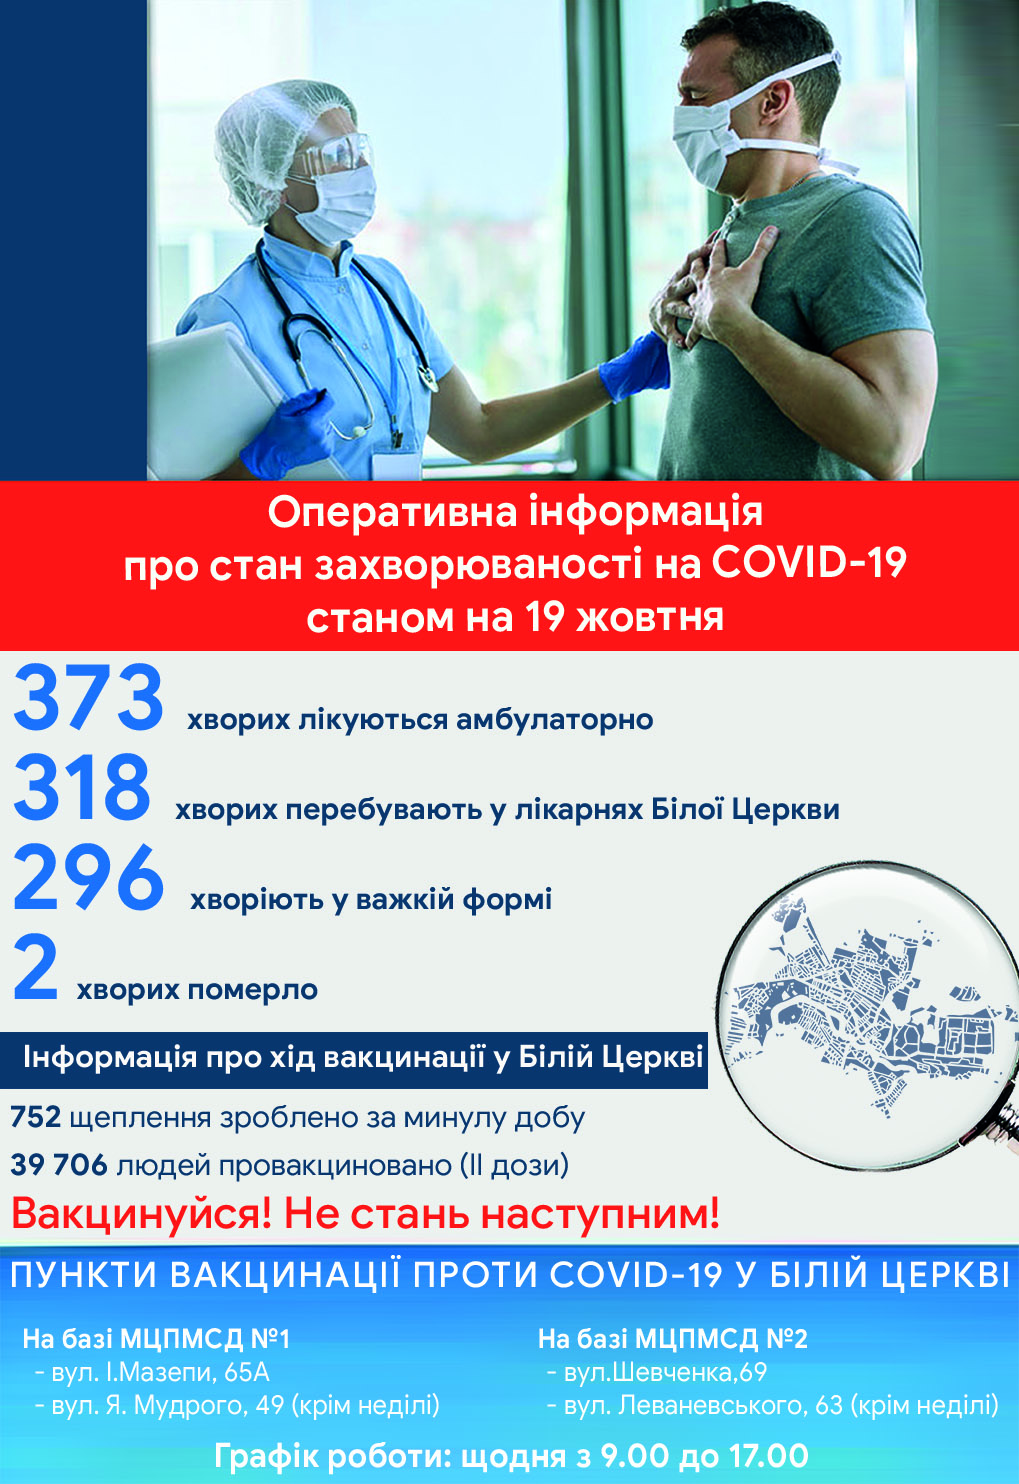 Оперативна інформація про стан захворюваності на COVID-19 станом на 19 жовтня